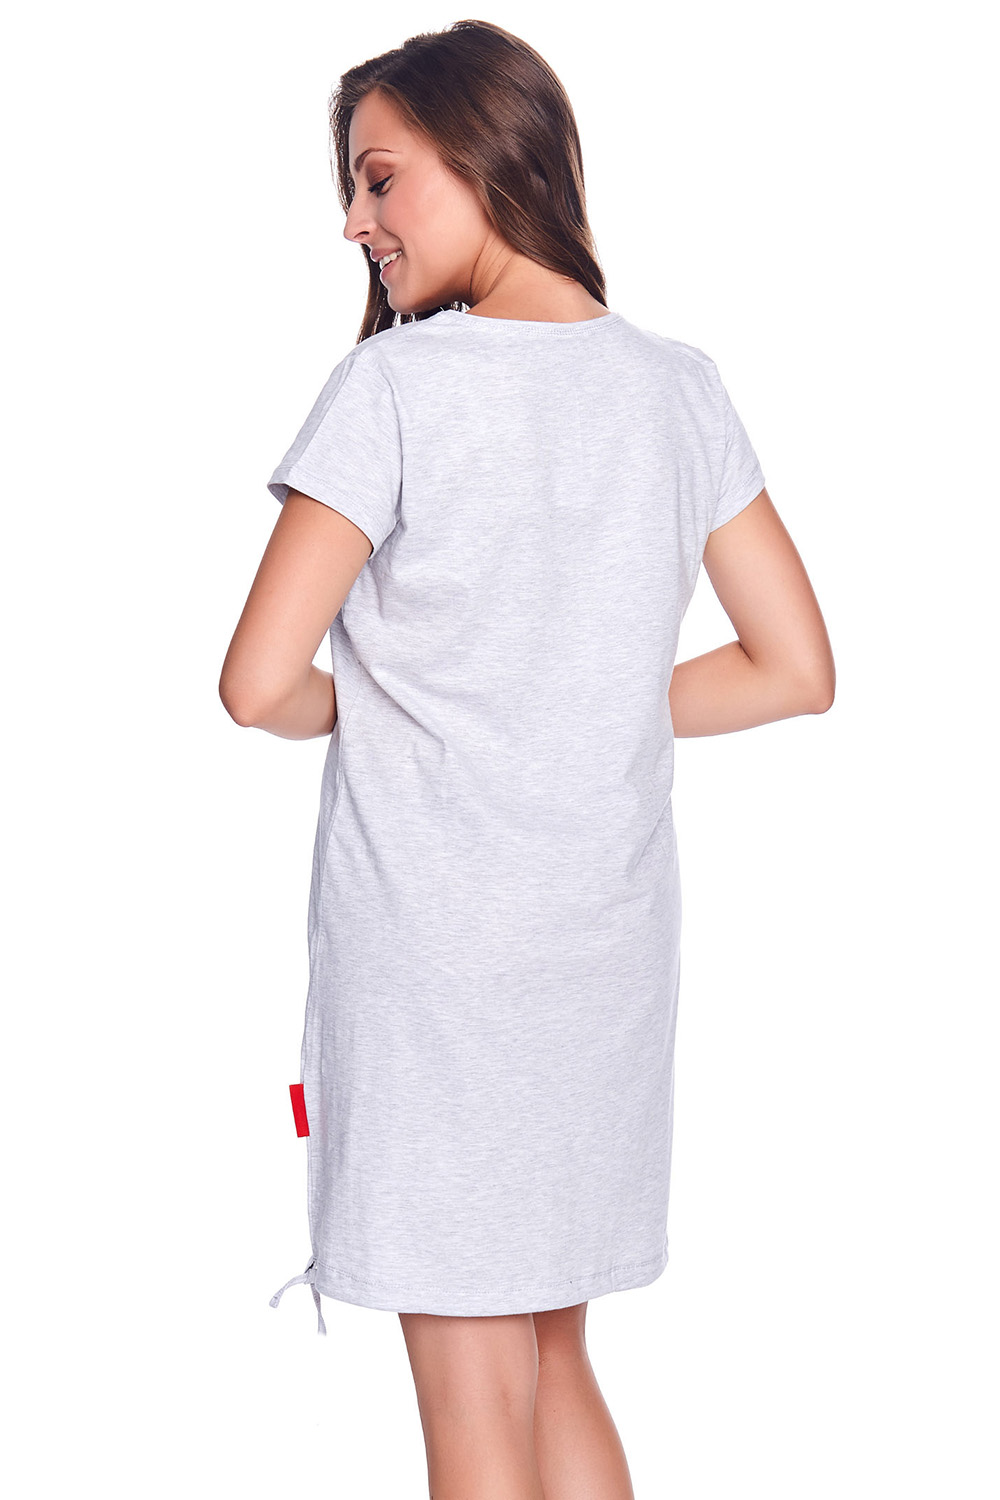 Dn-nightwear TCB.9081 - Koszulka ciążowa - Dobranocka